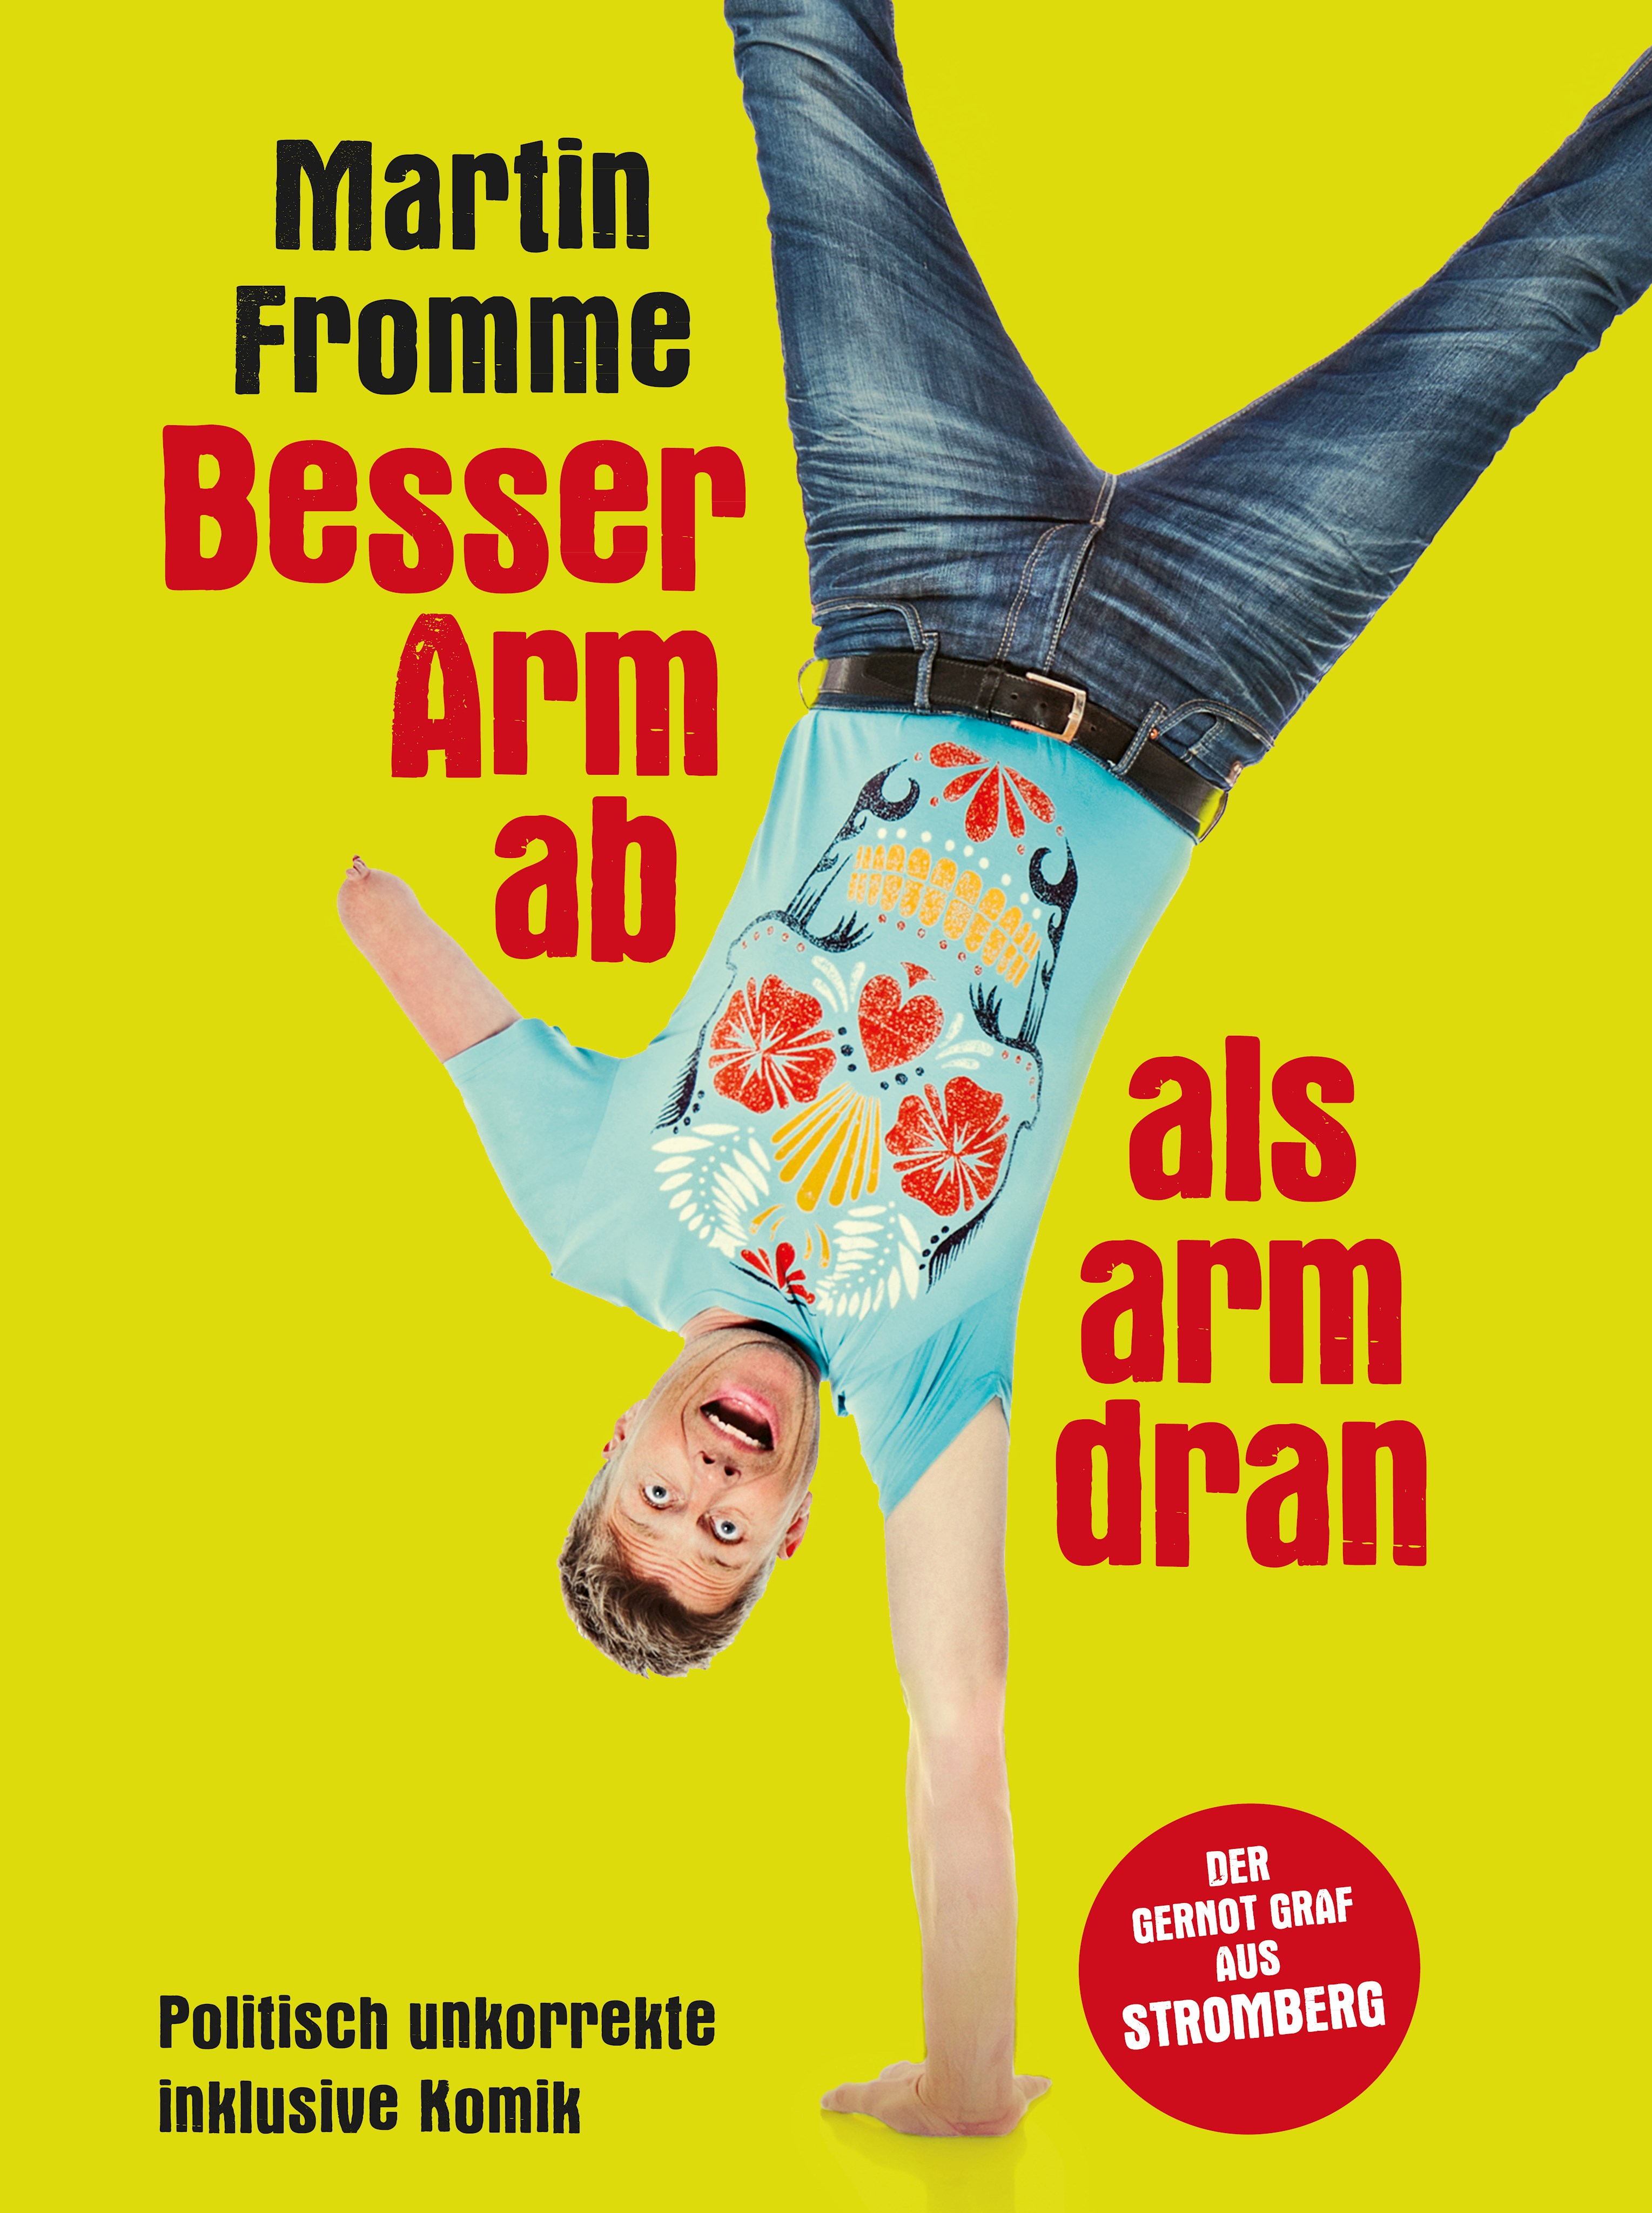 Parktheater Göggingen: Martin Fromme - Besser Arm ab als arm dran.